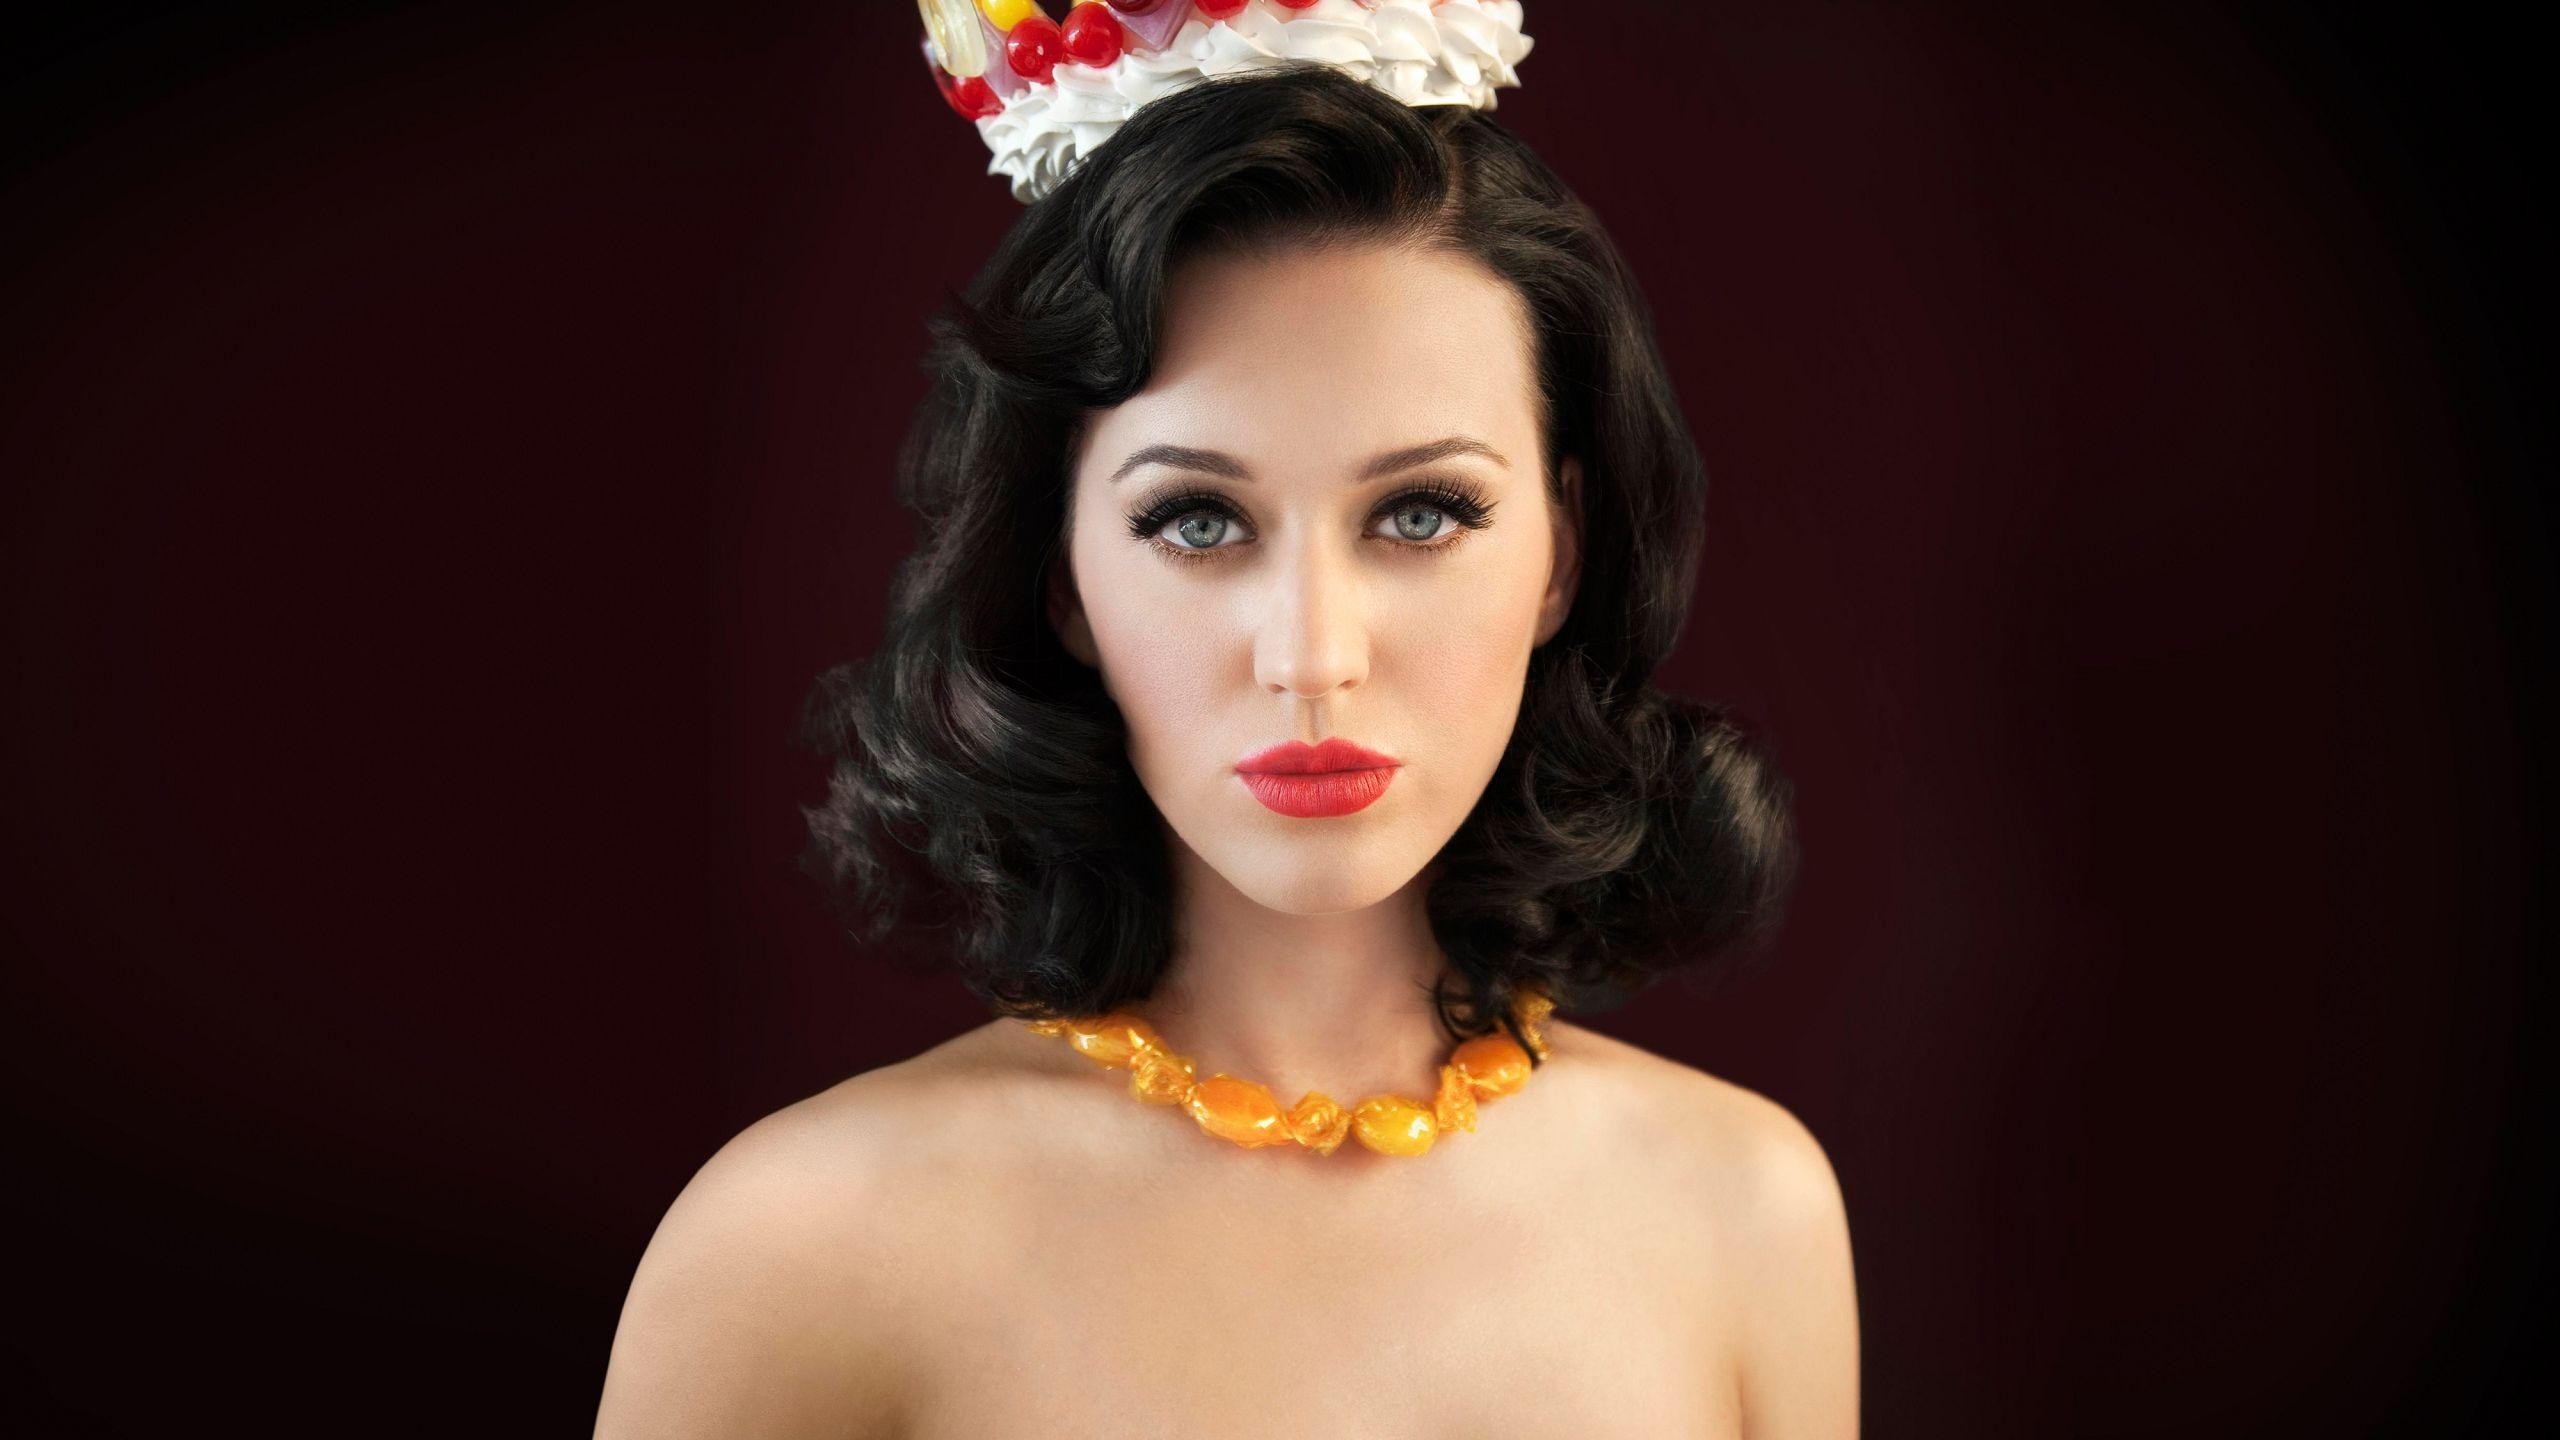 Cute HD Wallpaper Katy Perry | PixelsTalk Net